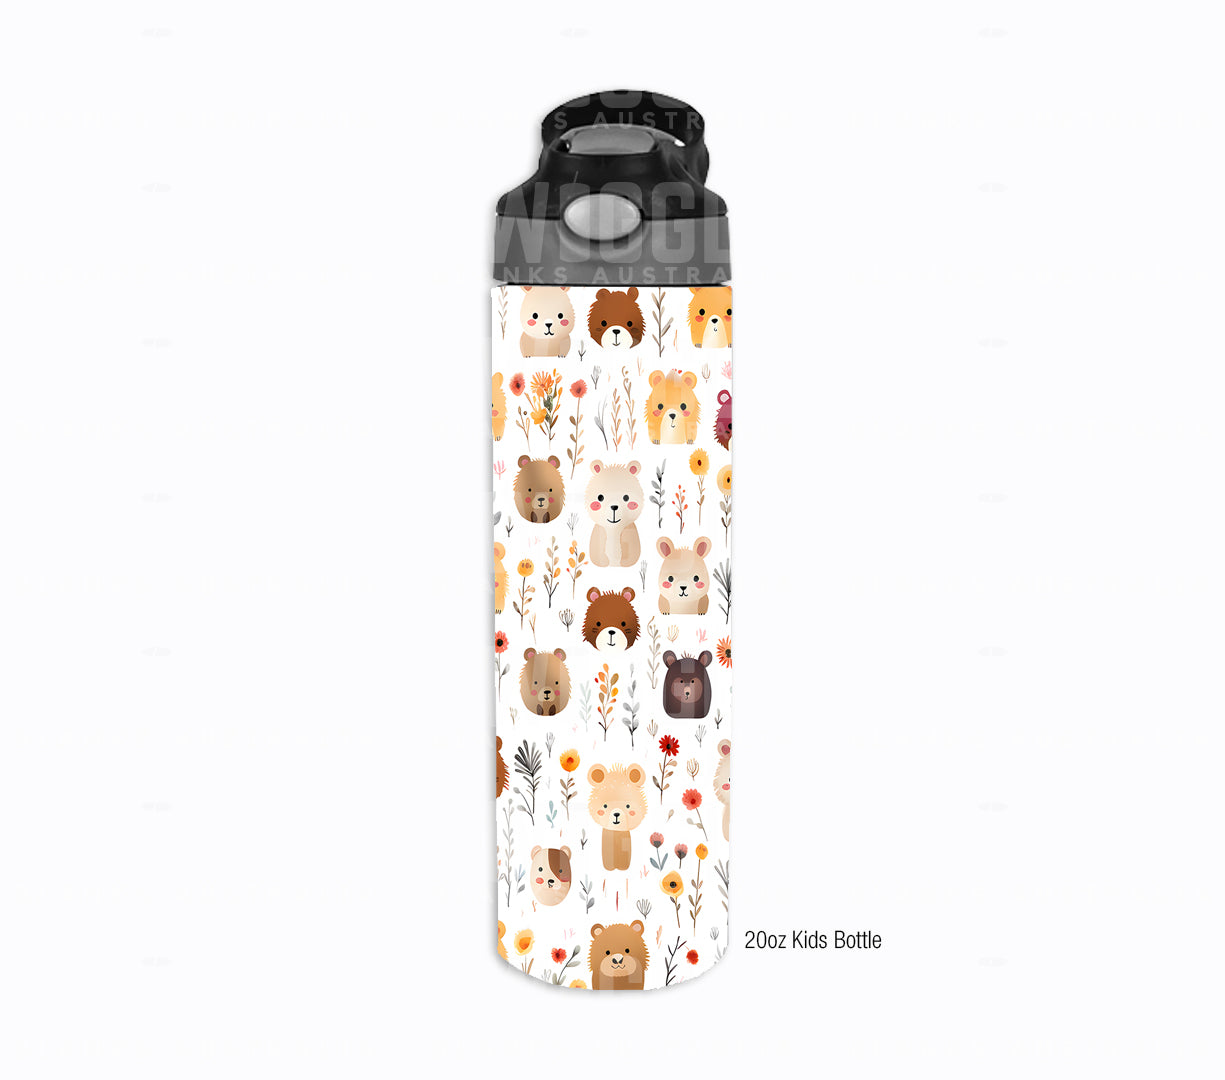 Little Bears Watercolour Kids #53 - Digital Download - Assorted Bottle Sizes